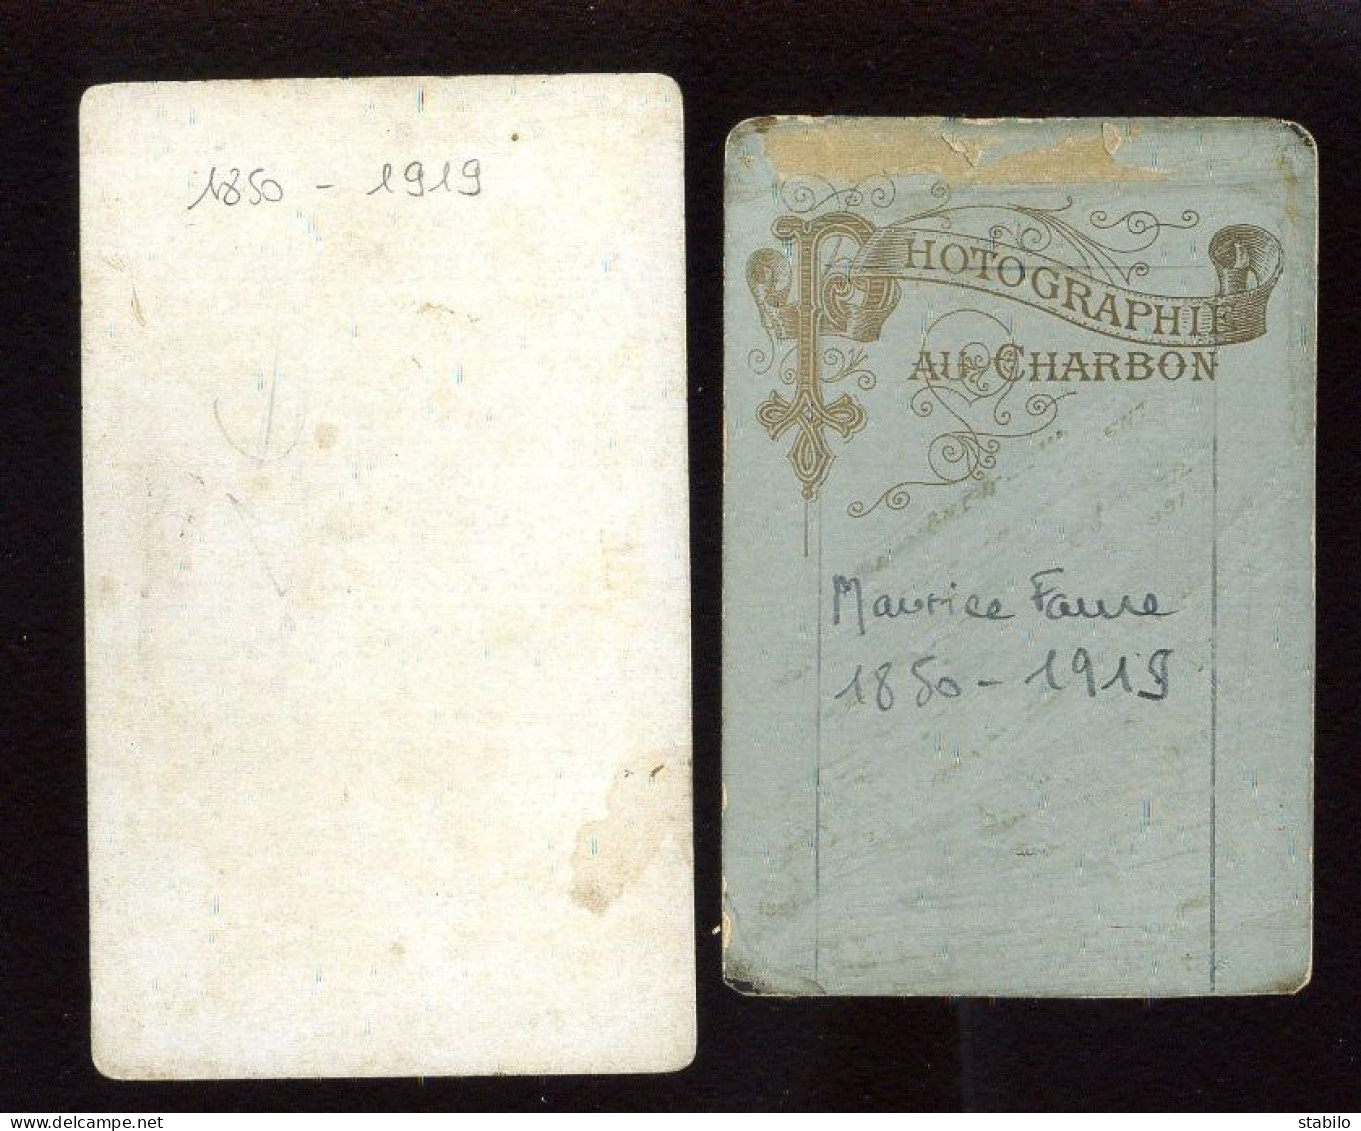 MAURICE-LOUIS FAURE (1850-1919) - HOMME POLITIQUE, MAJORAL DU FELIBRIGE (VOIR DESCRIPTION) - 2 PHOTOS FORMAT CDV - Identifizierten Personen